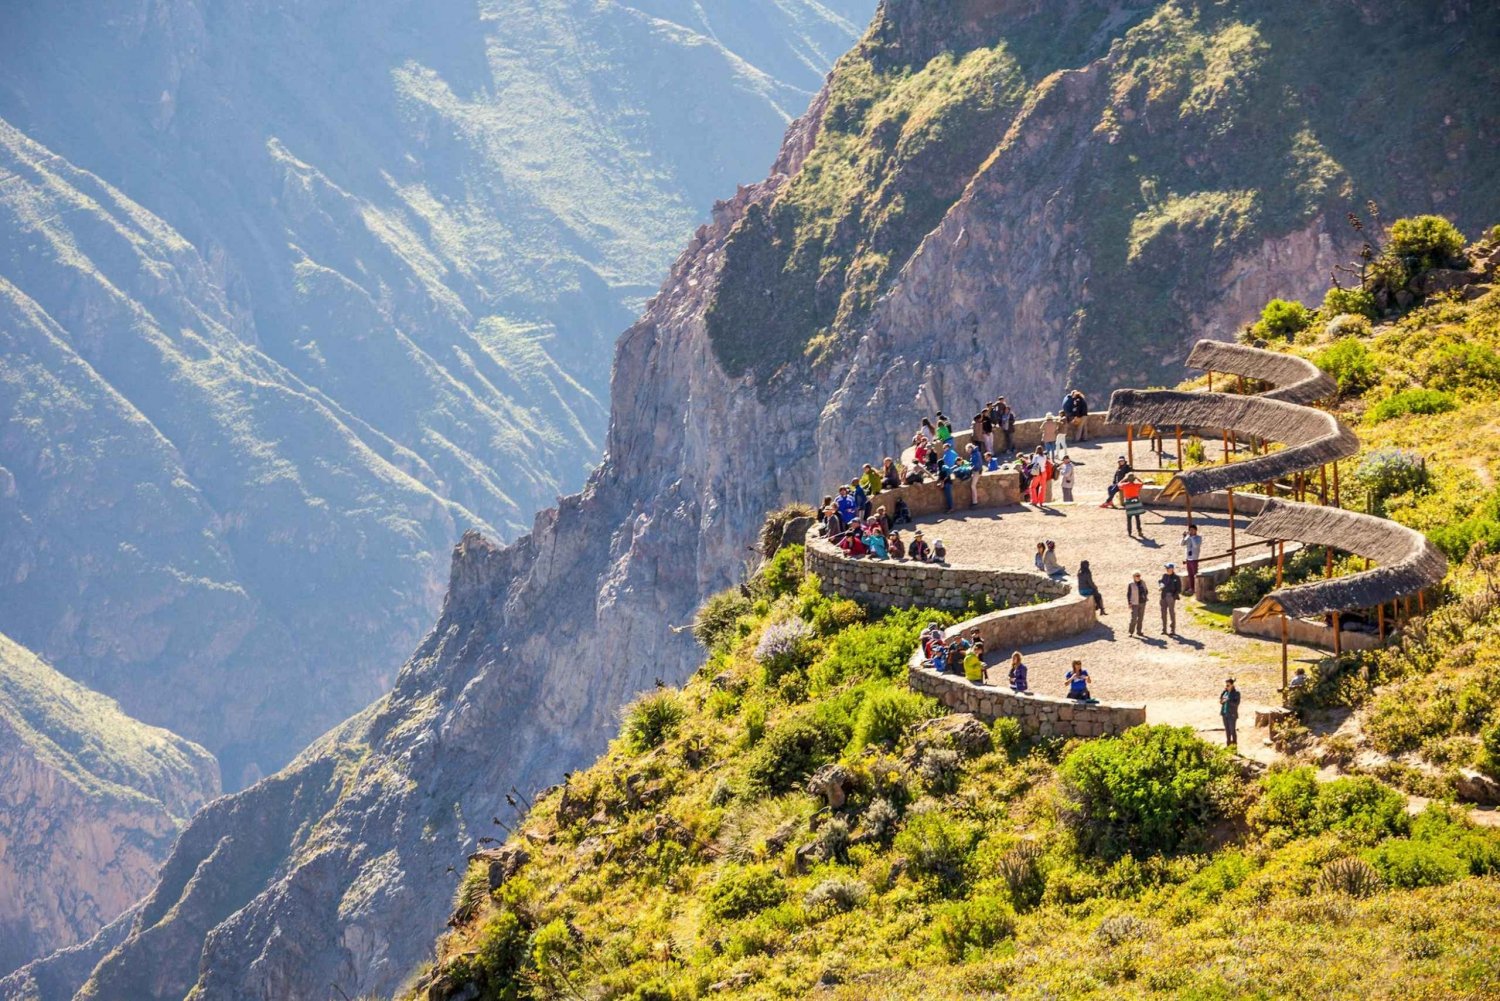 Von Arequipa: 2-tägige Colca Canyon Tour mit Transfer nach Puno